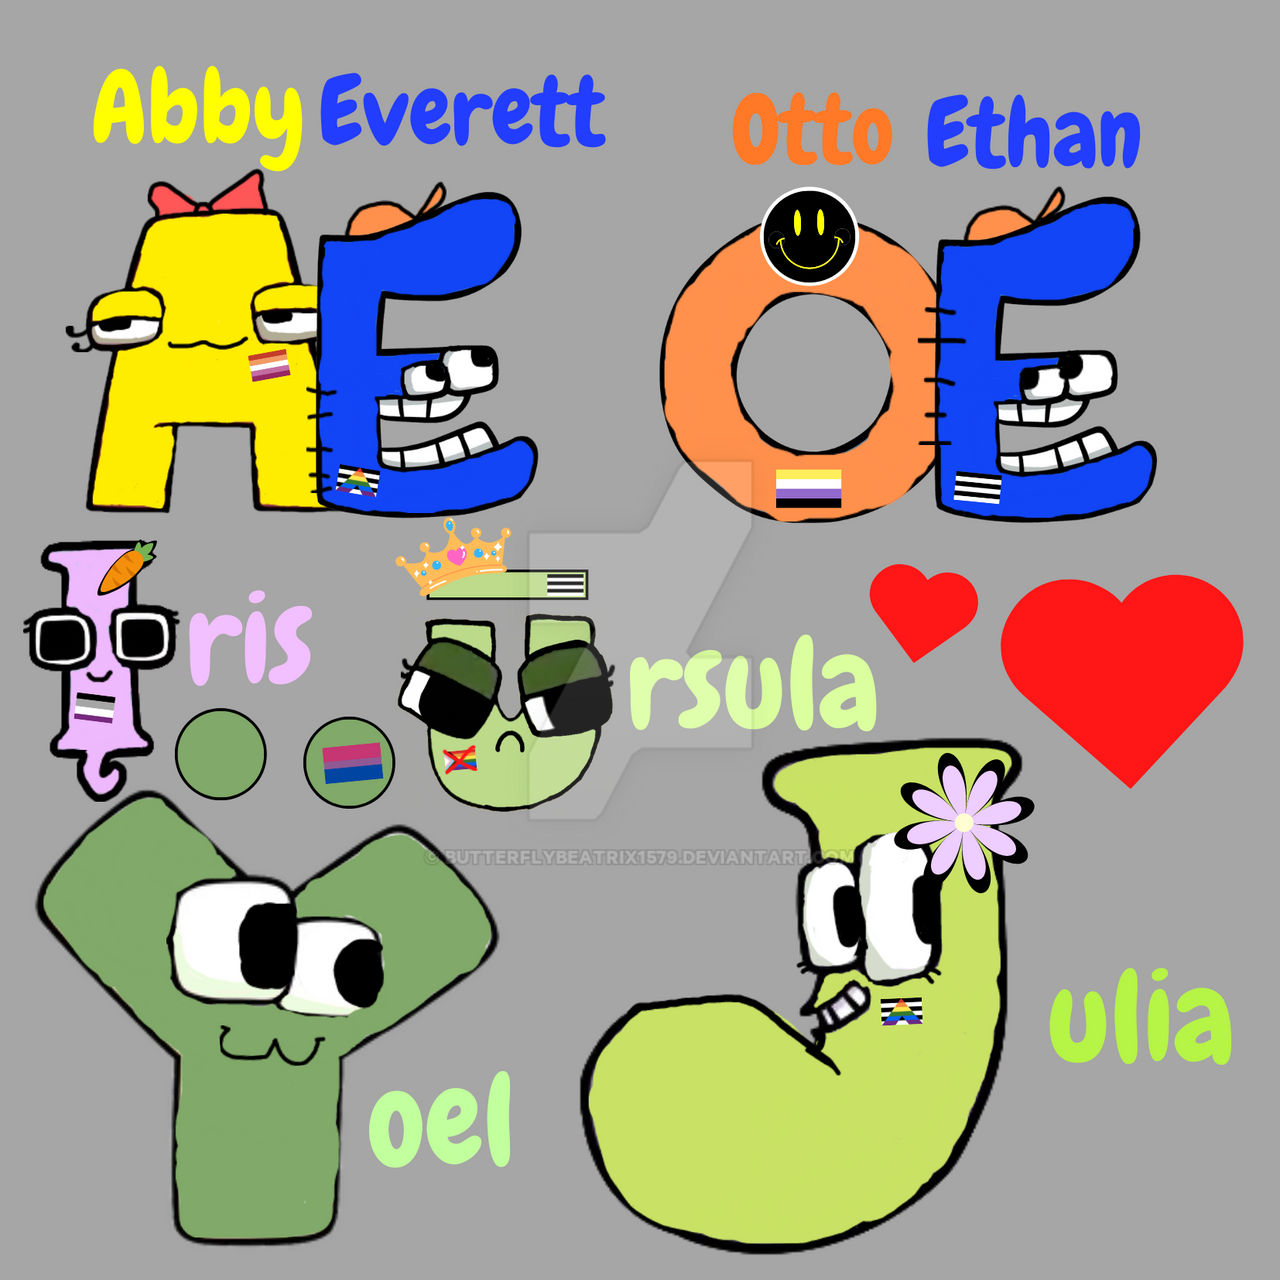 My alphabet lore oc! by MuffinsArts on DeviantArt